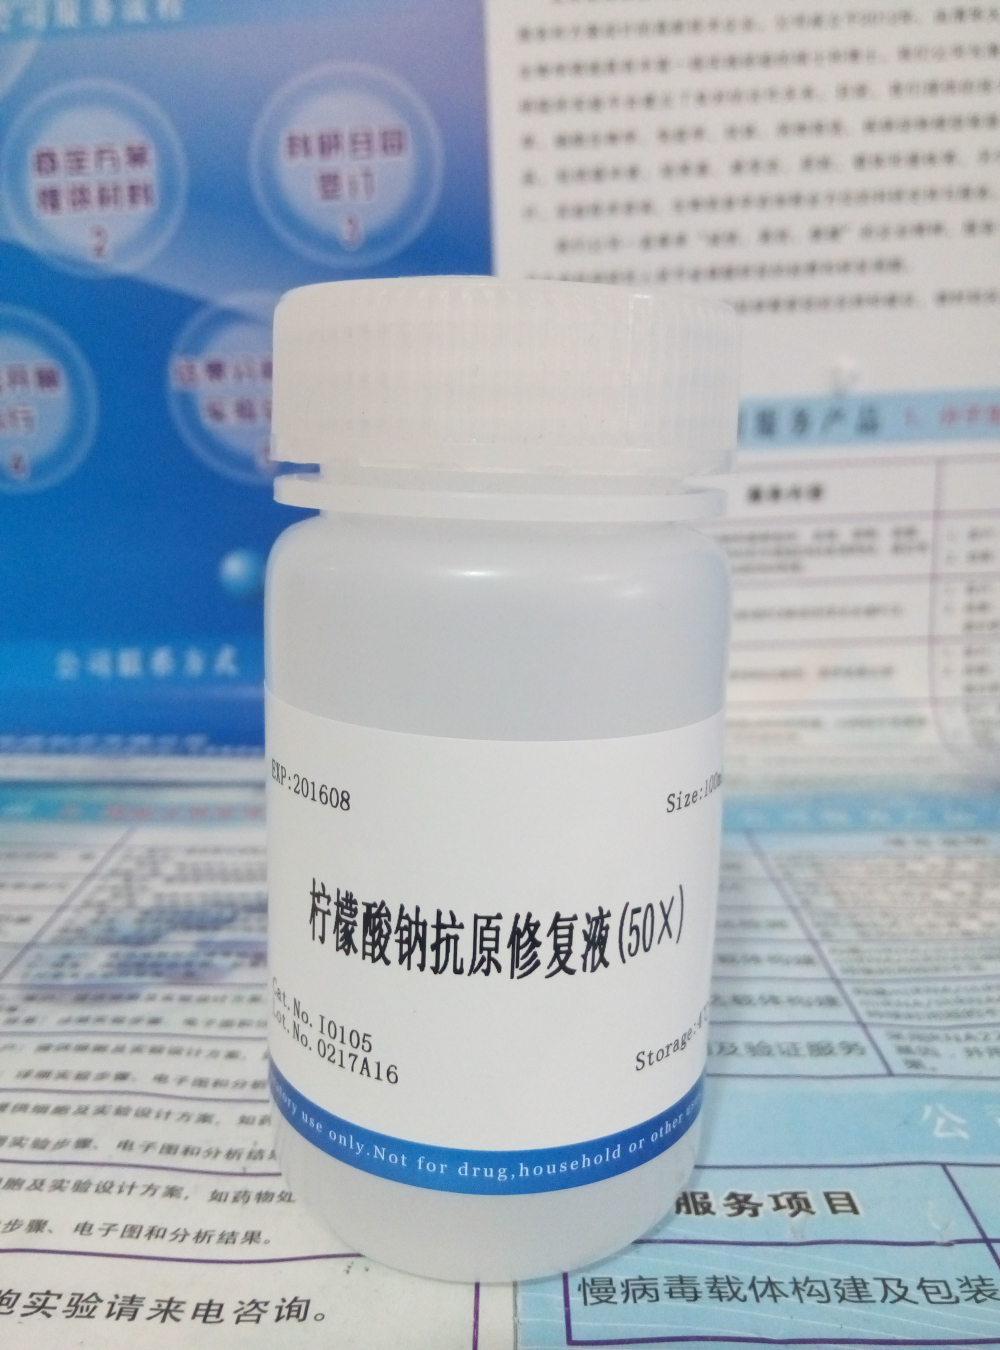 供应柠檬酸钠抗原修复液(50×) NobleRyder I0105 100ml 现货 质量保证 量大优惠